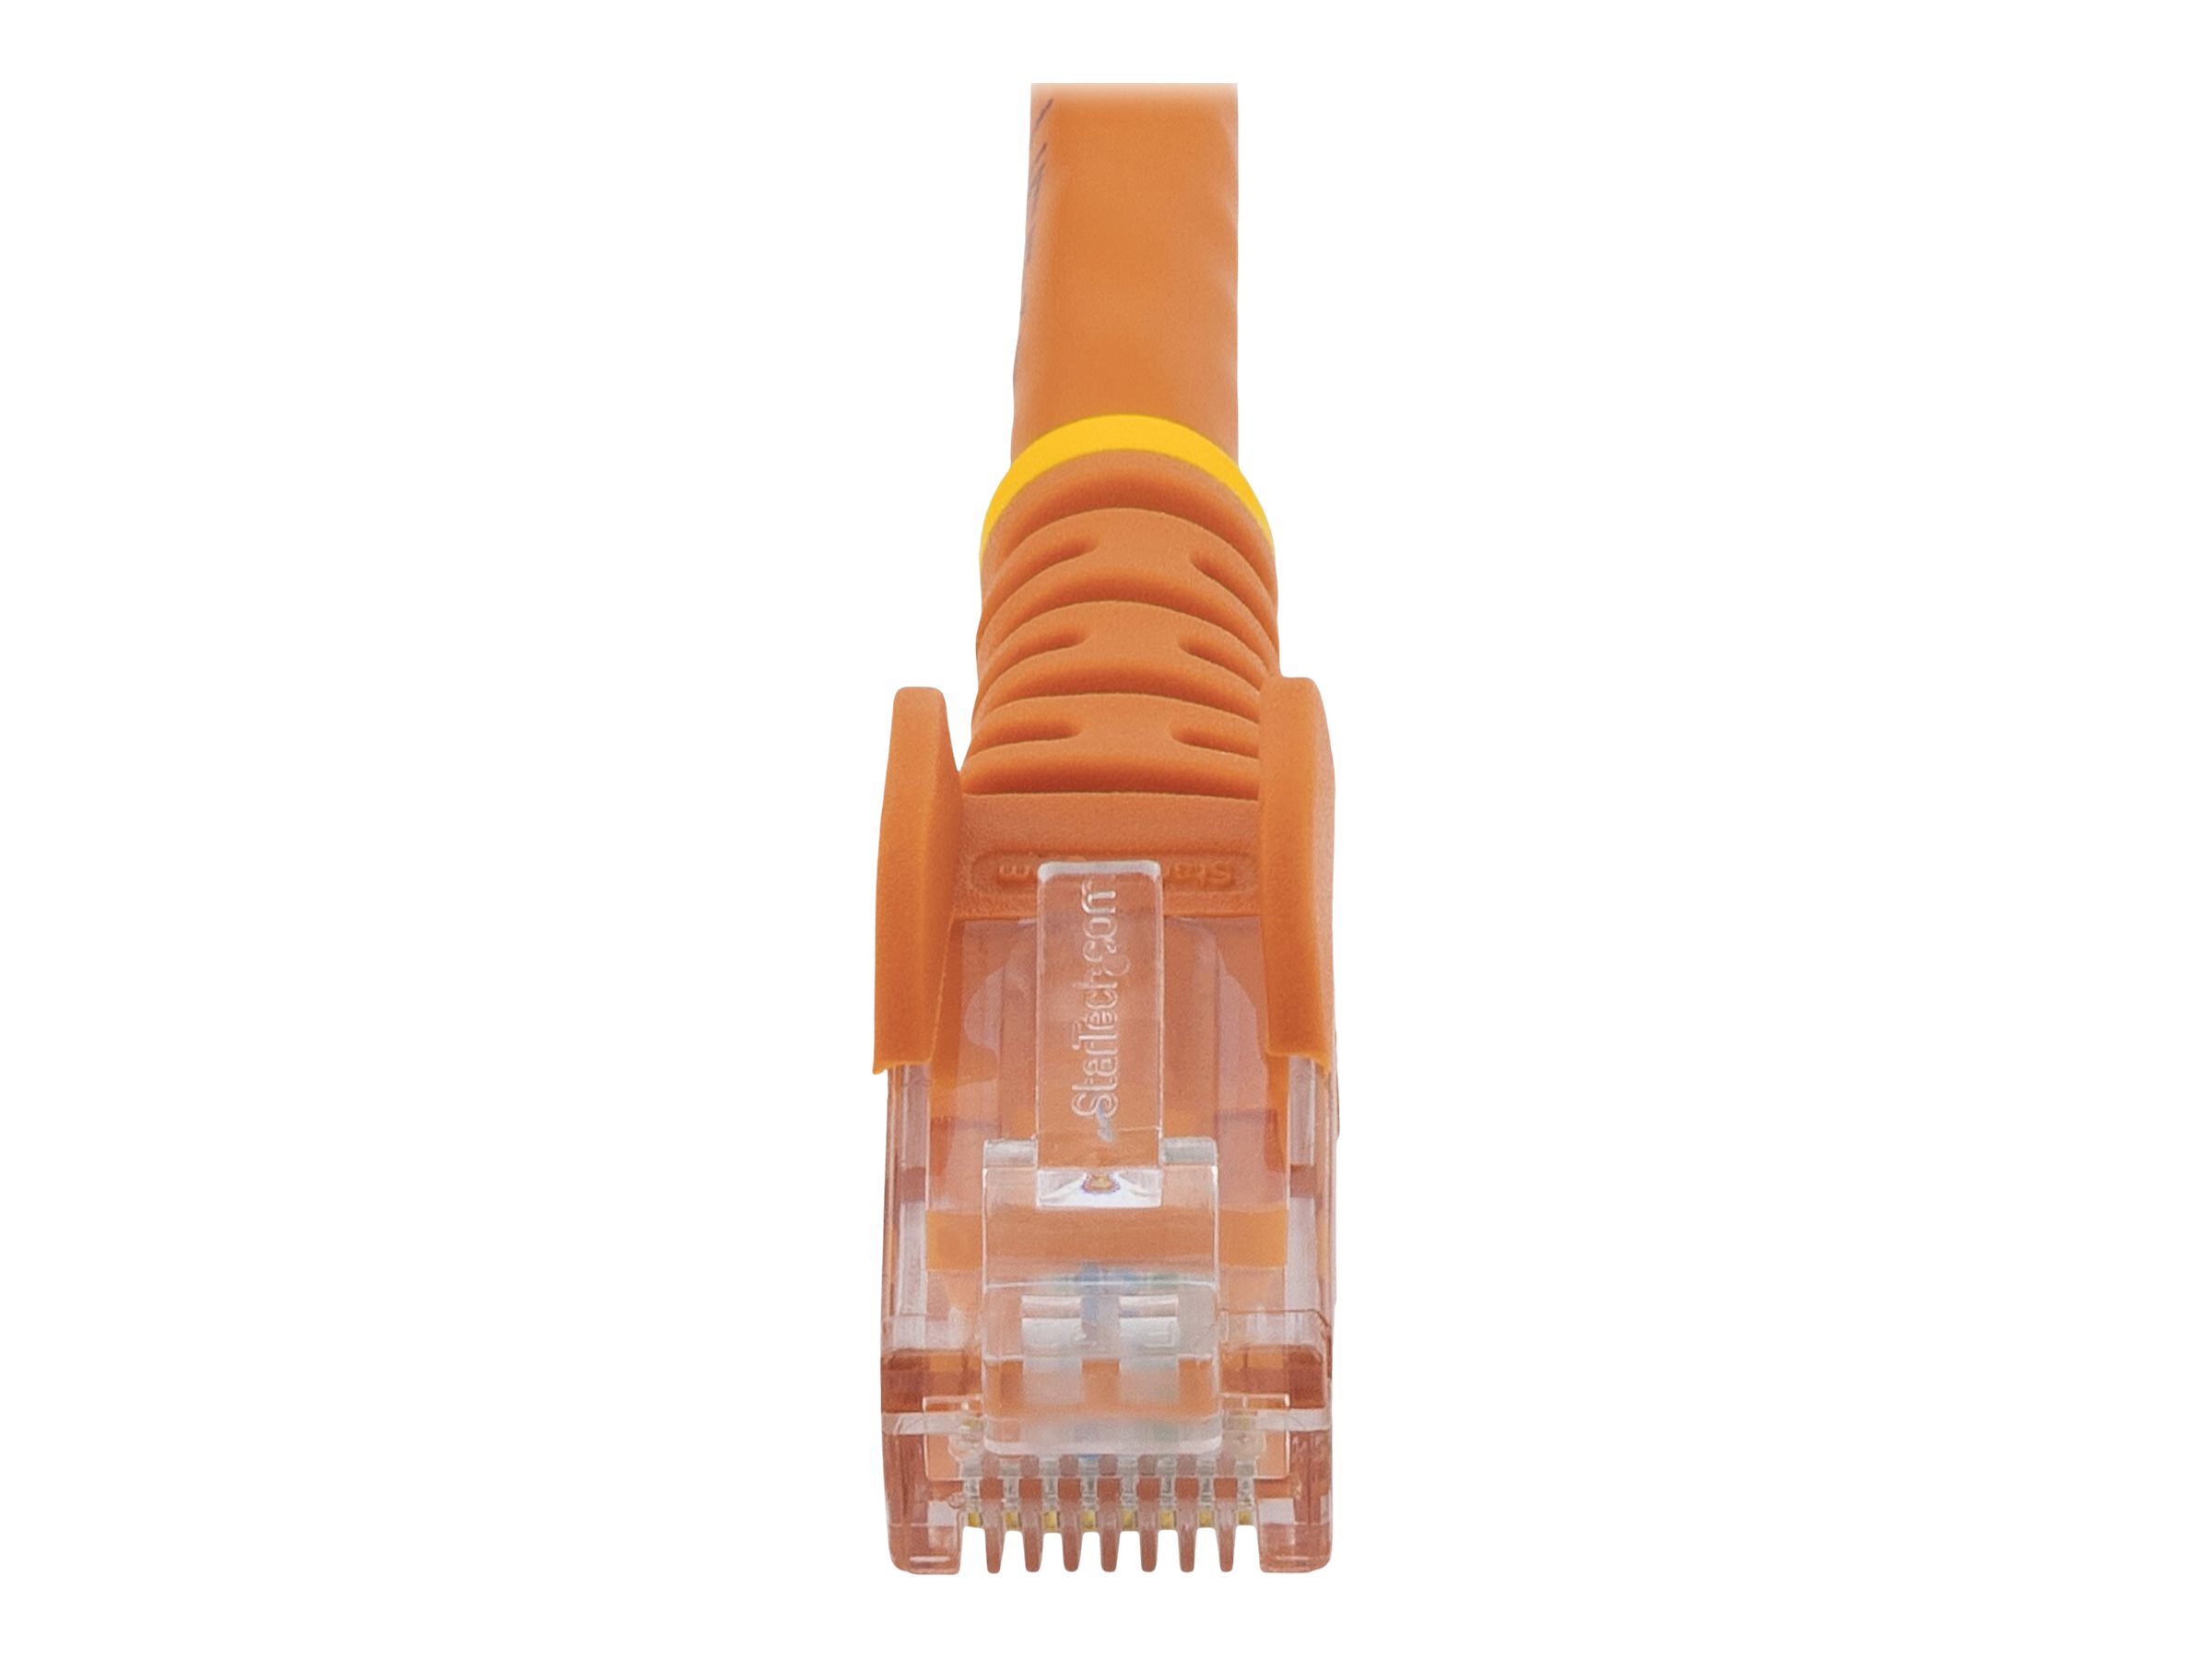 StarTech.com Câble réseau Cat6 UTP sans crochet - 50 cm Orange - Cordon Ethernet RJ45 anti-accroc - Câble patch - Câble réseau - RJ-45 (M) pour RJ-45 (M) - 50 cm - UTP - CAT 6 - moulé, sans crochet, bloqué - orange - N6PATC50CMOR - Câbles à paire torsadée